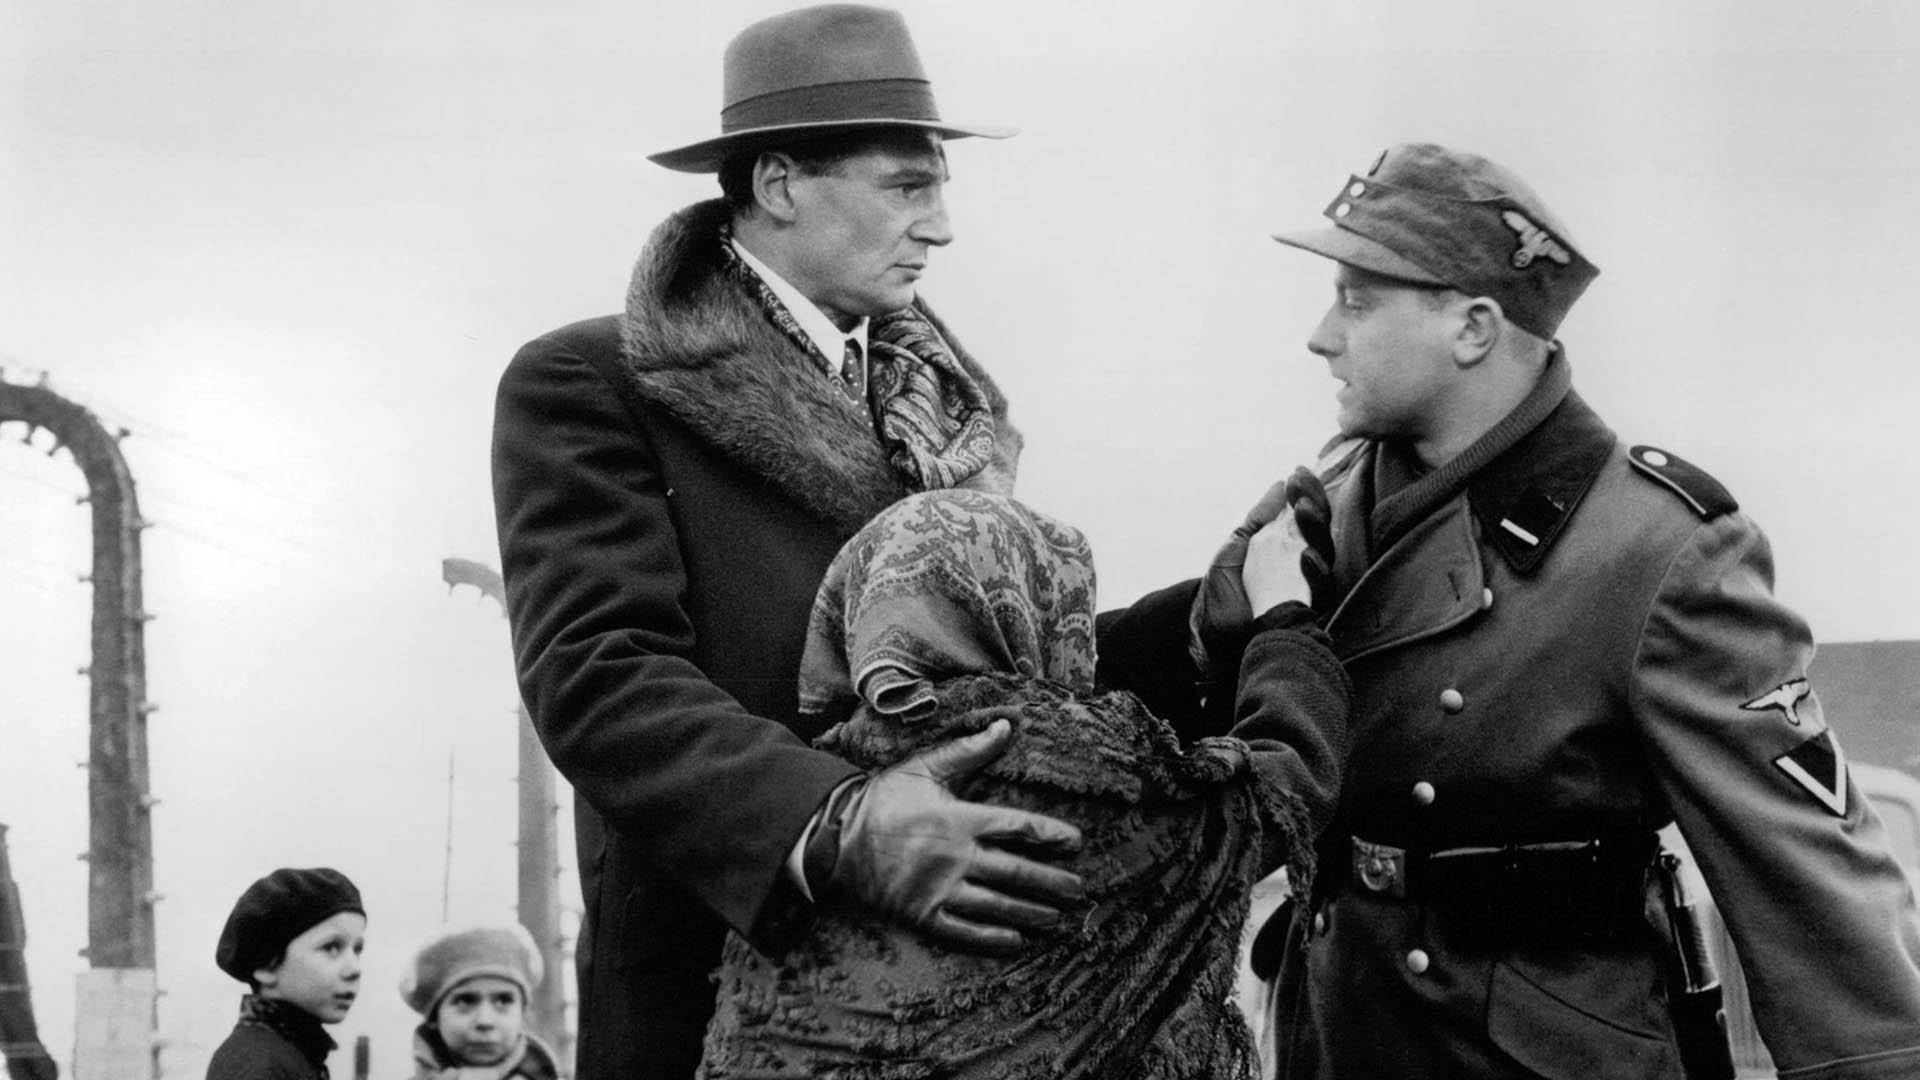 اسکار شیندلر در فیلم schindler's list درحال نجات دادن یک خانم